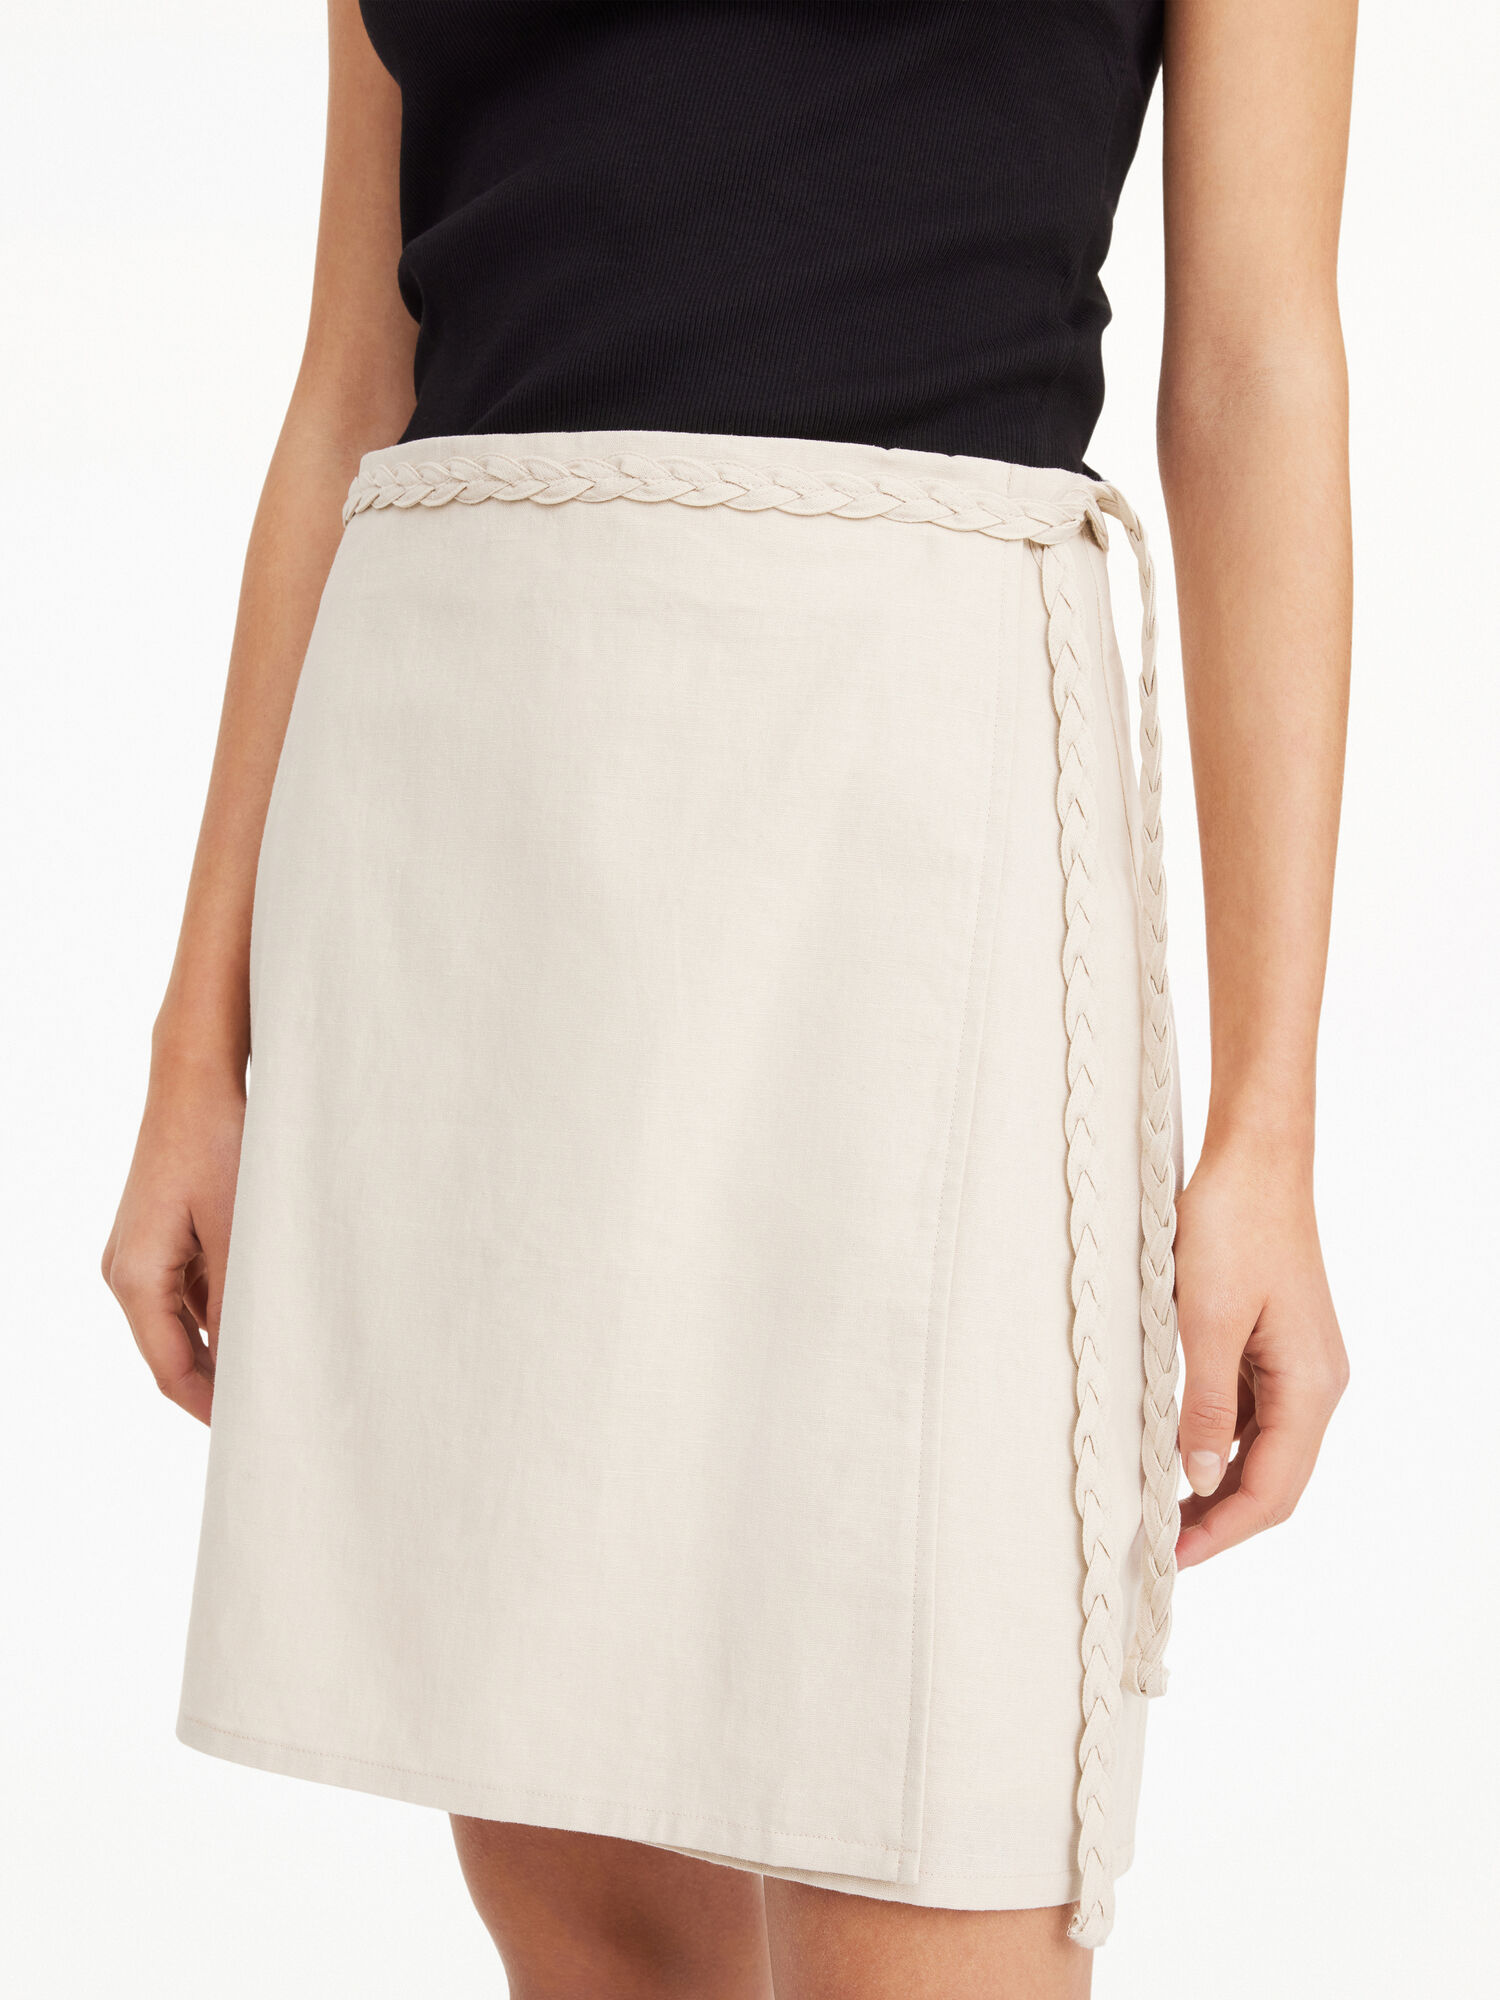 Auree mini skirt